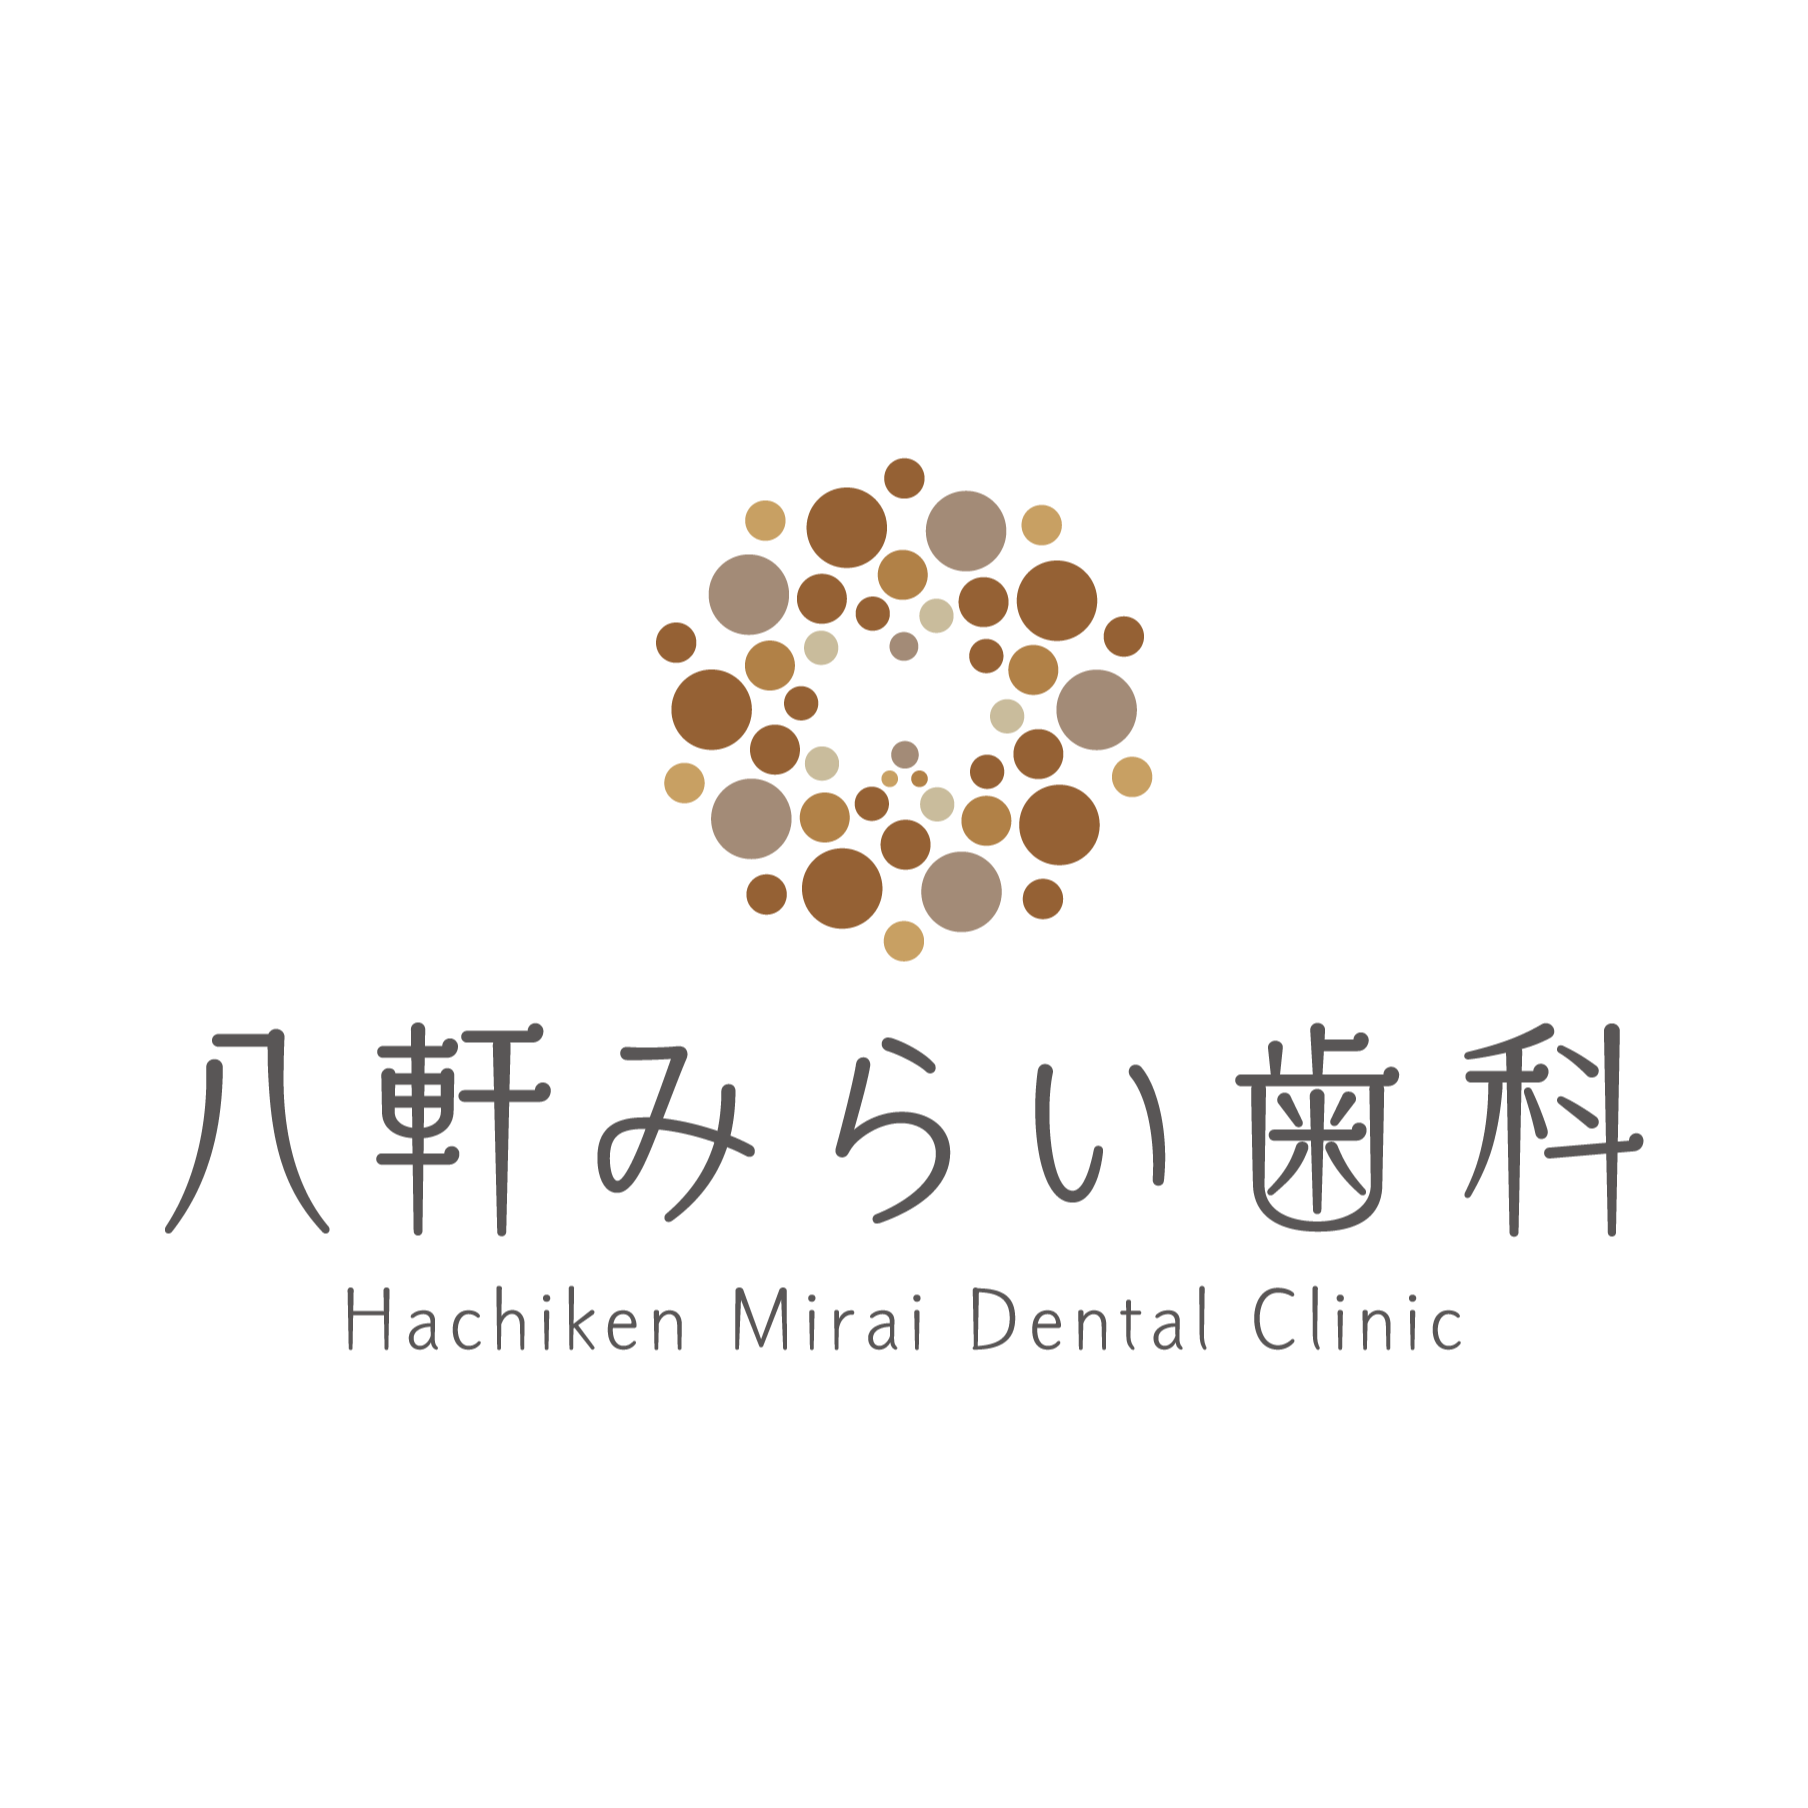 八軒みらい歯科 - Dental Clinic - 札幌市 - 011-633-3939 Japan | ShowMeLocal.com